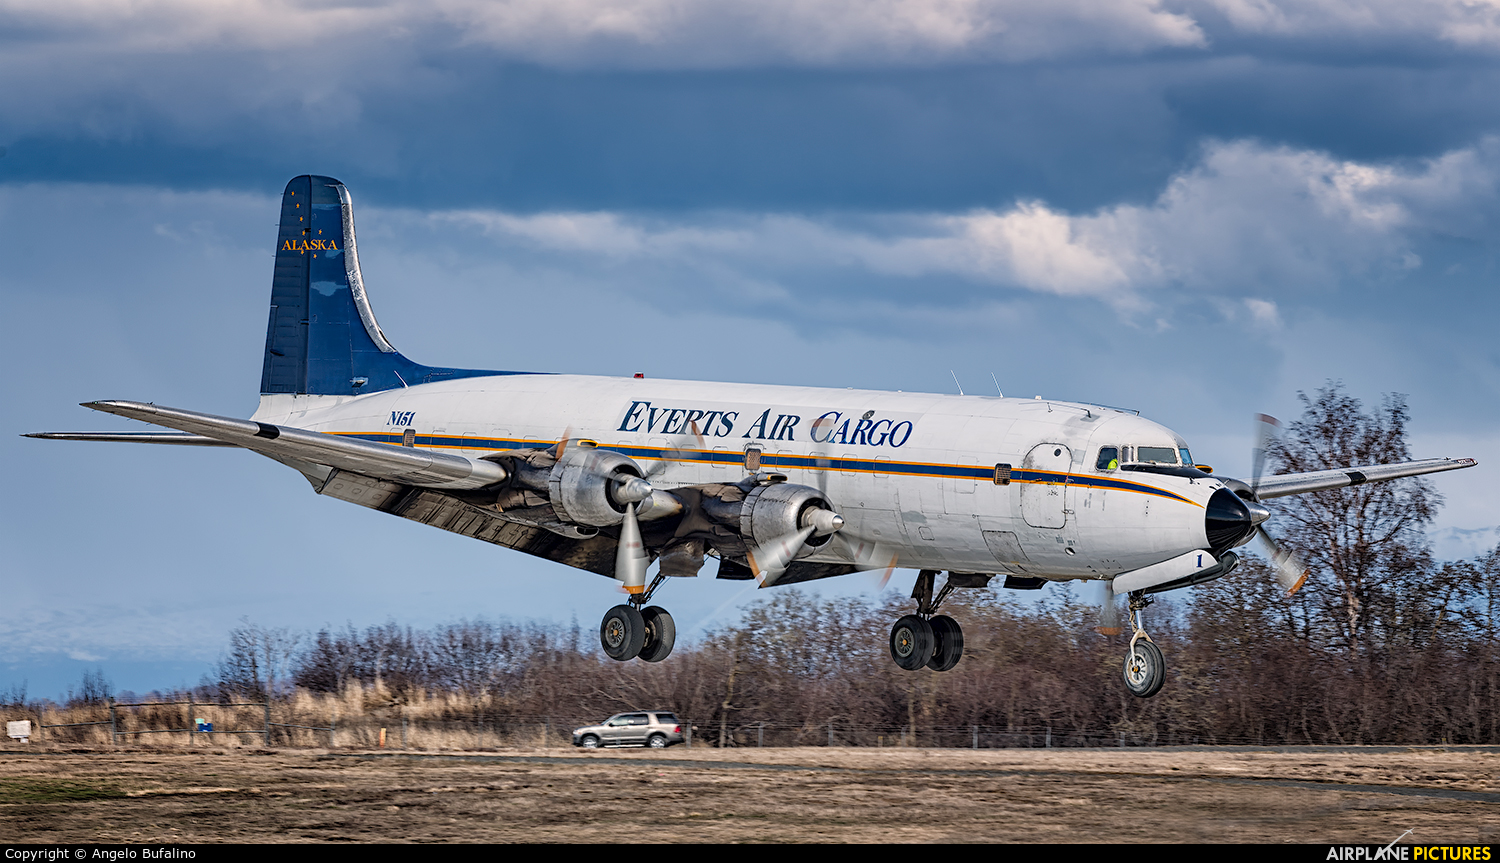 Everts Air Cargo N151 aircraft at Anchorage - Ted Stevens Intl / Kulis Air National Guard Base